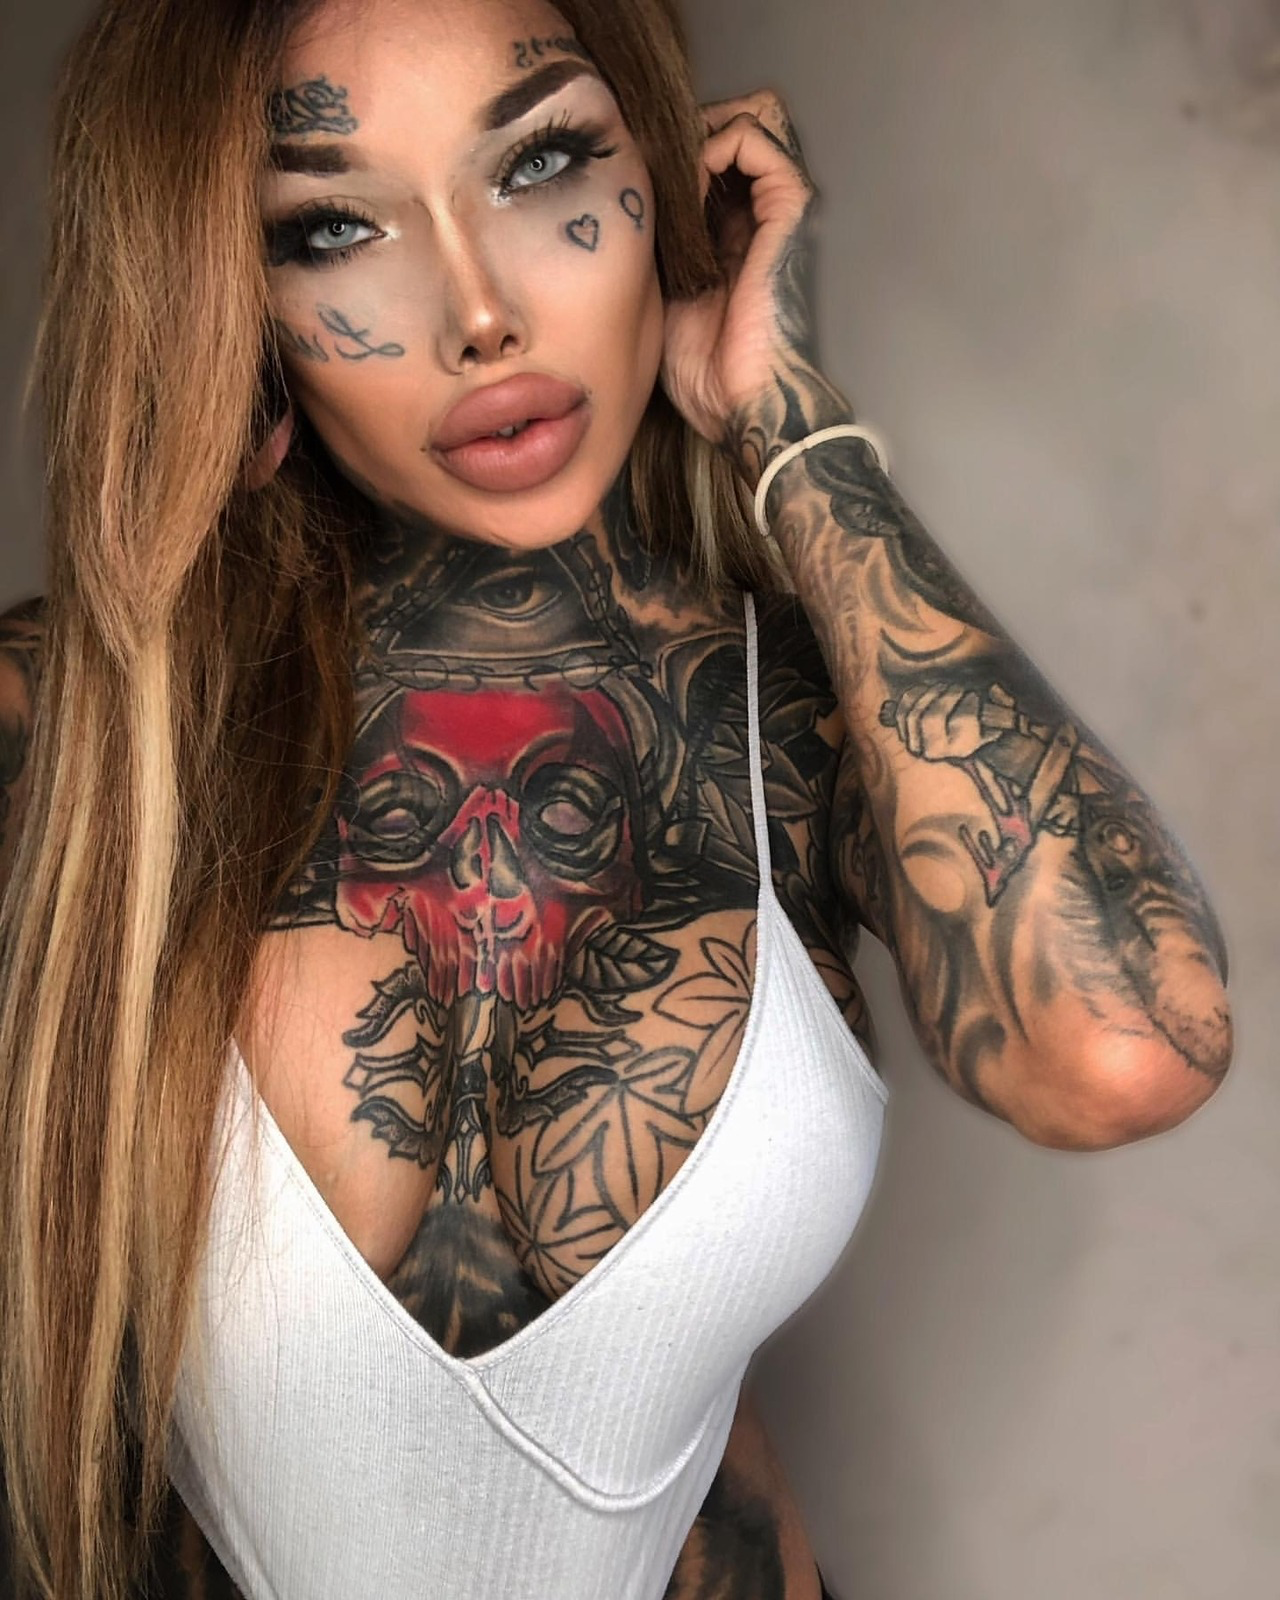 christian wunderlich on tattooed women tattoed